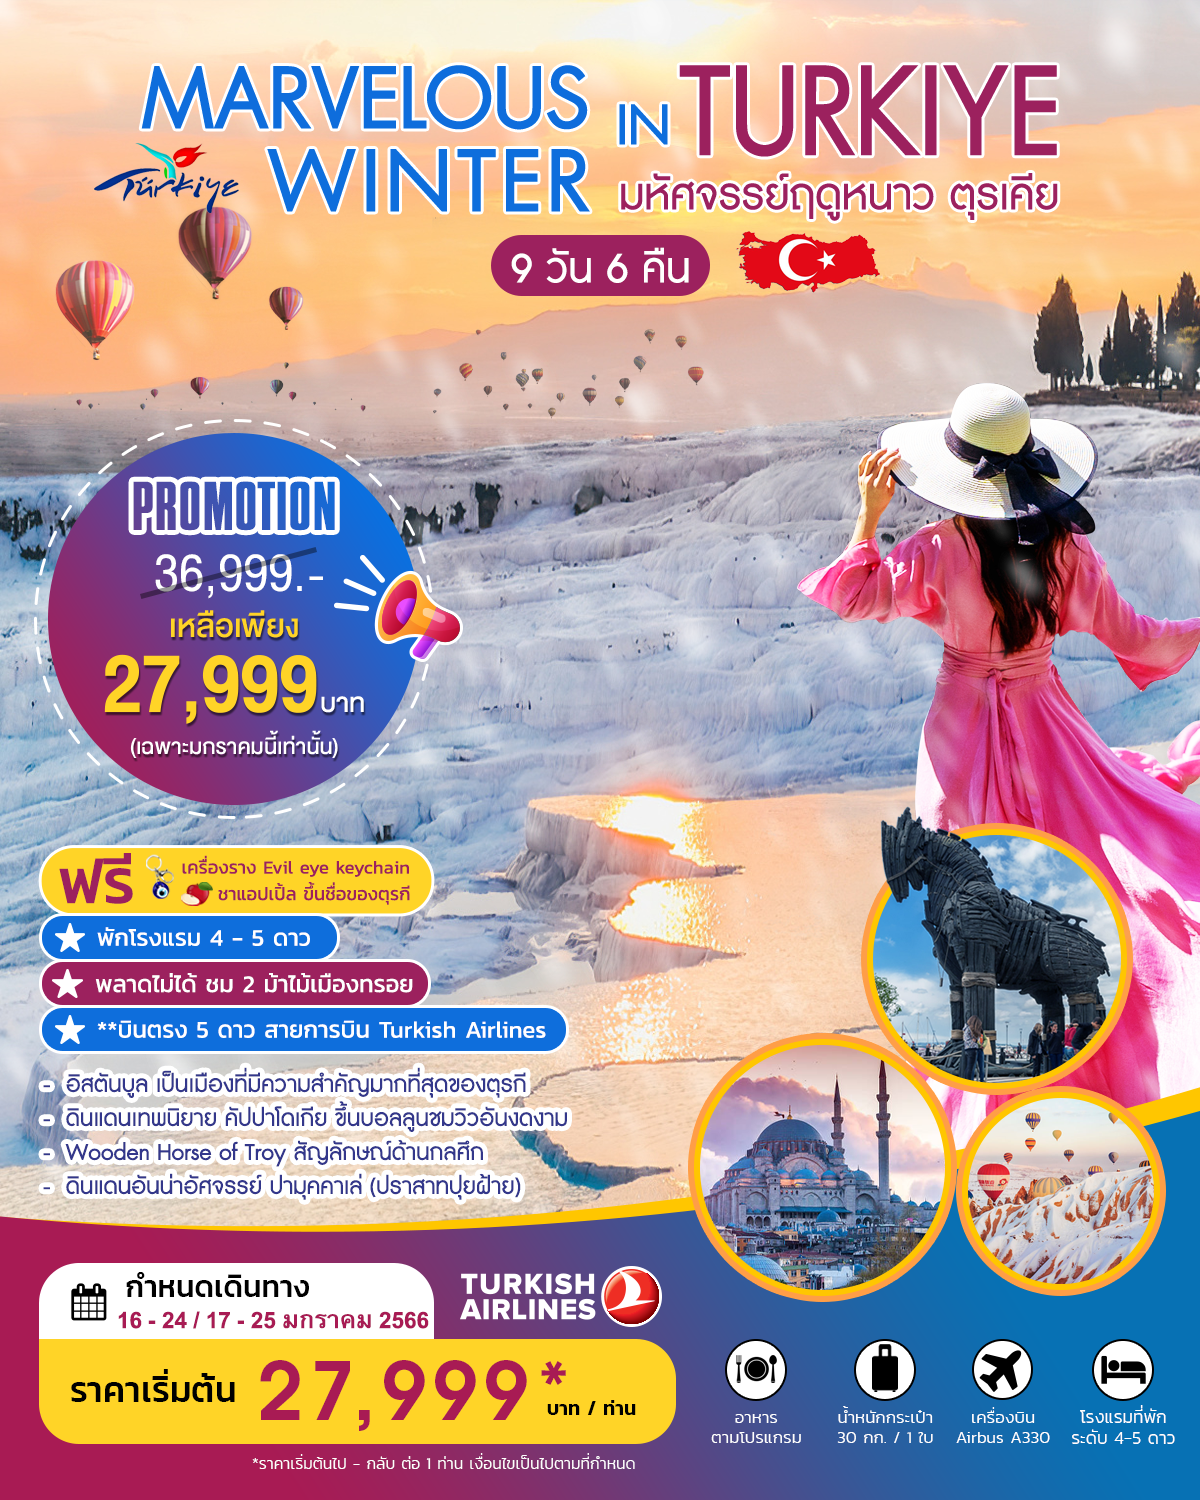 MARVELOUS WINTER IN TURKIYE มหัศจรรย์ฤดูหนาว ตุรเคีย